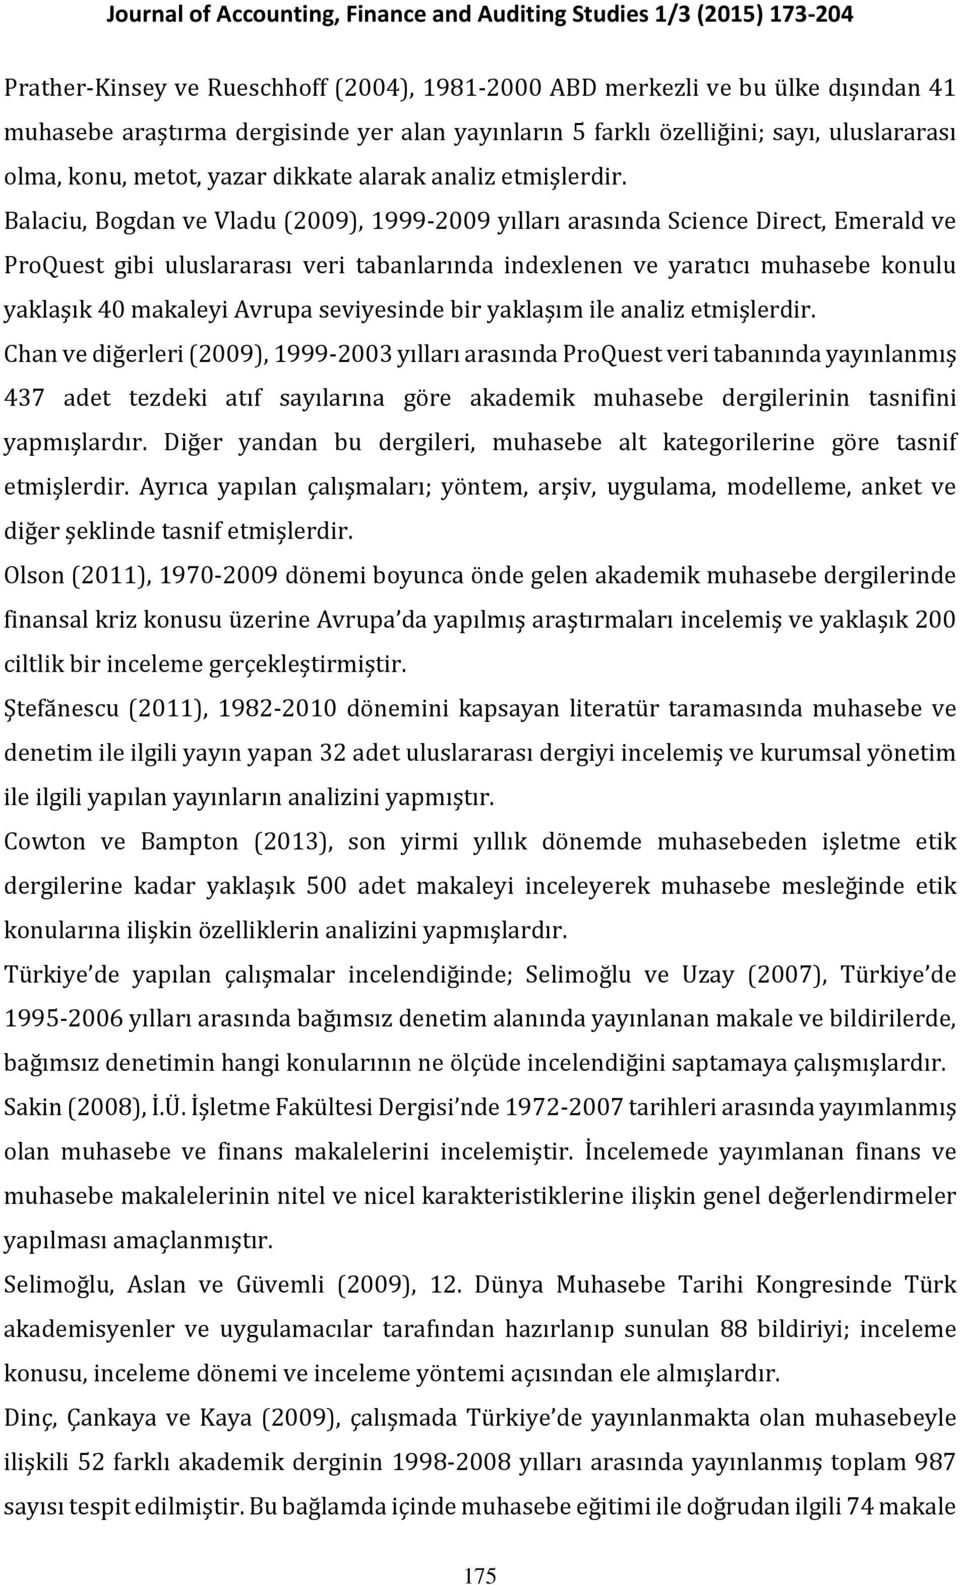 Balaciu, Bogdan ve Vladu (2009), 1999-2009 yılları arasında Science Direct, Emerald ve ProQuest gibi uluslararası veri tabanlarında indexlenen ve yaratıcı muhasebe konulu yaklaşık 40 makaleyi Avrupa